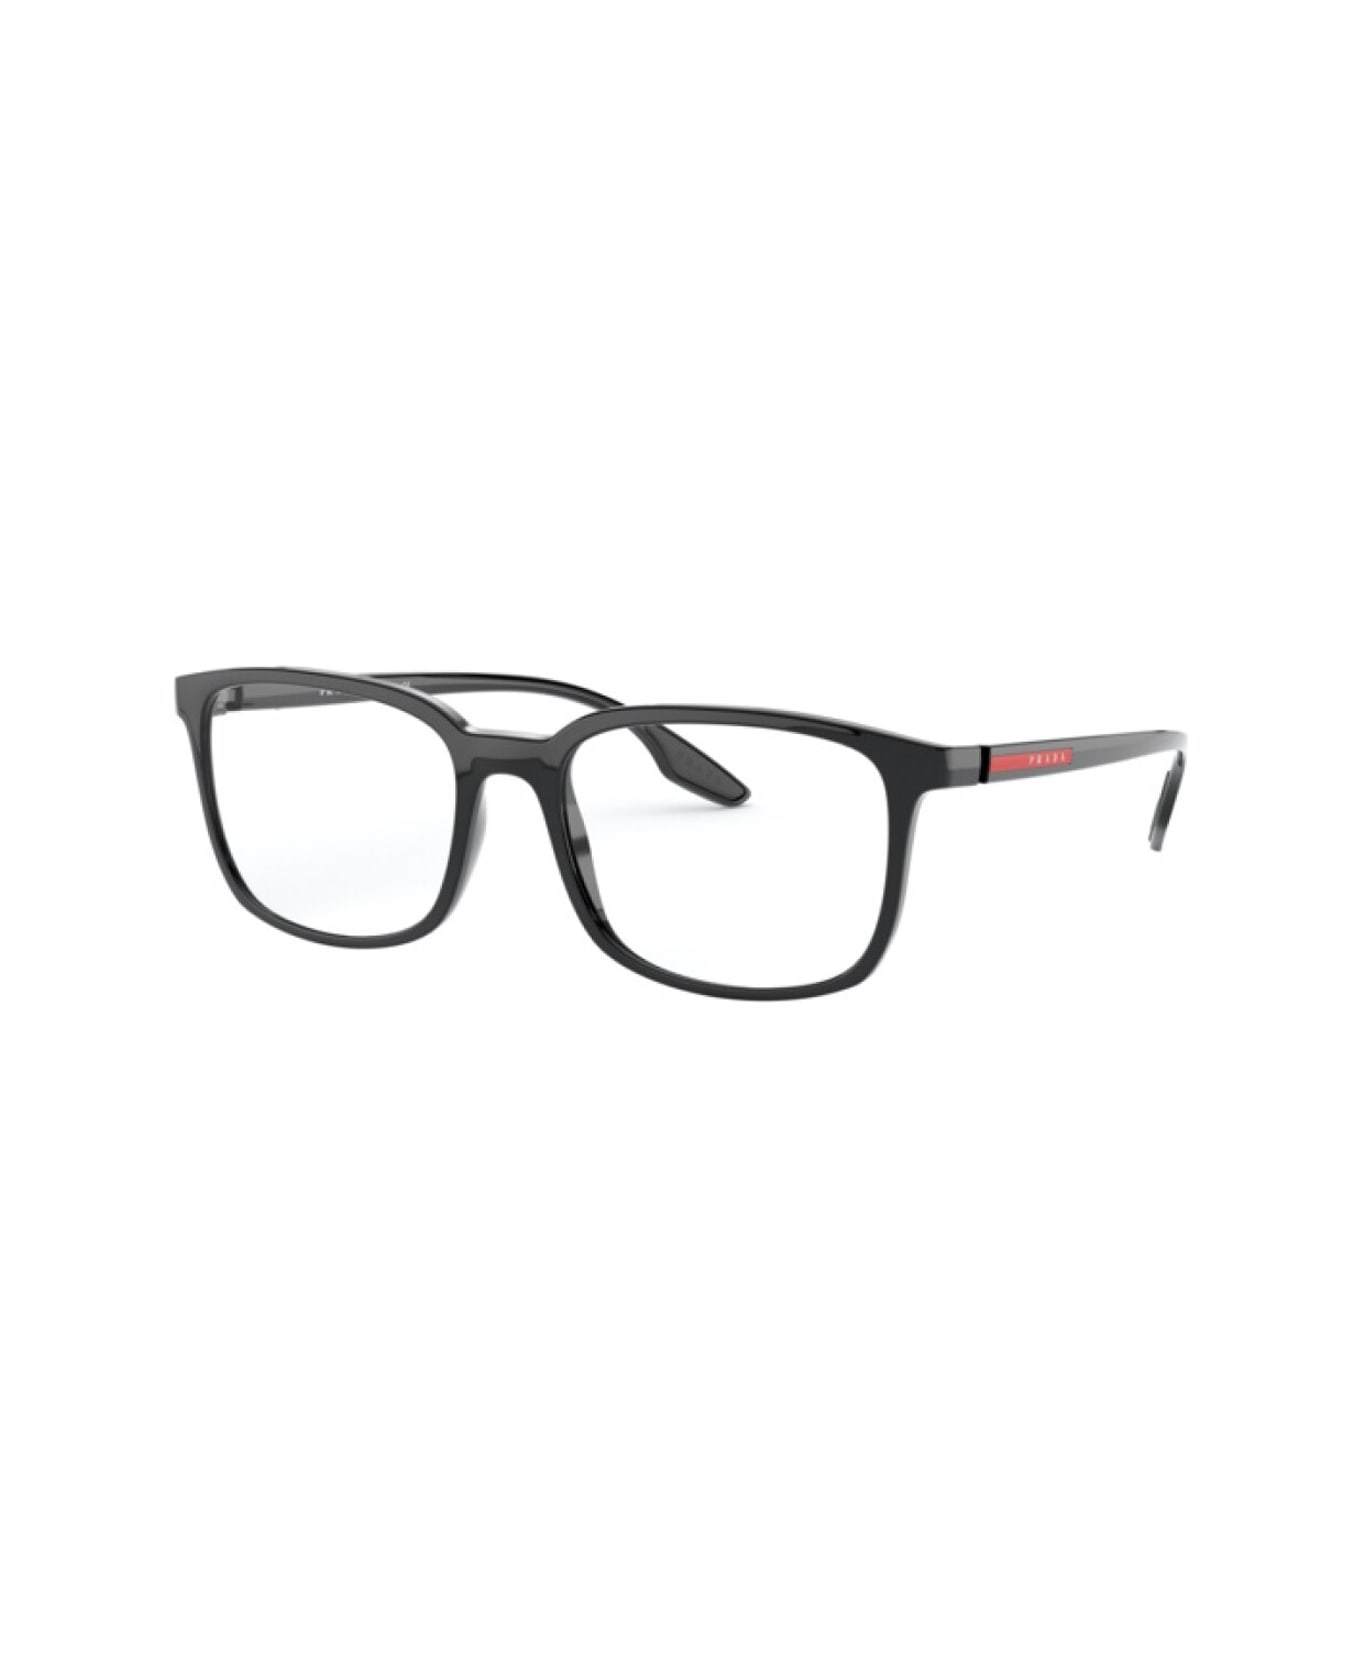 Prada Eyewear Pr 05mv Glasses - Nero アイウェア